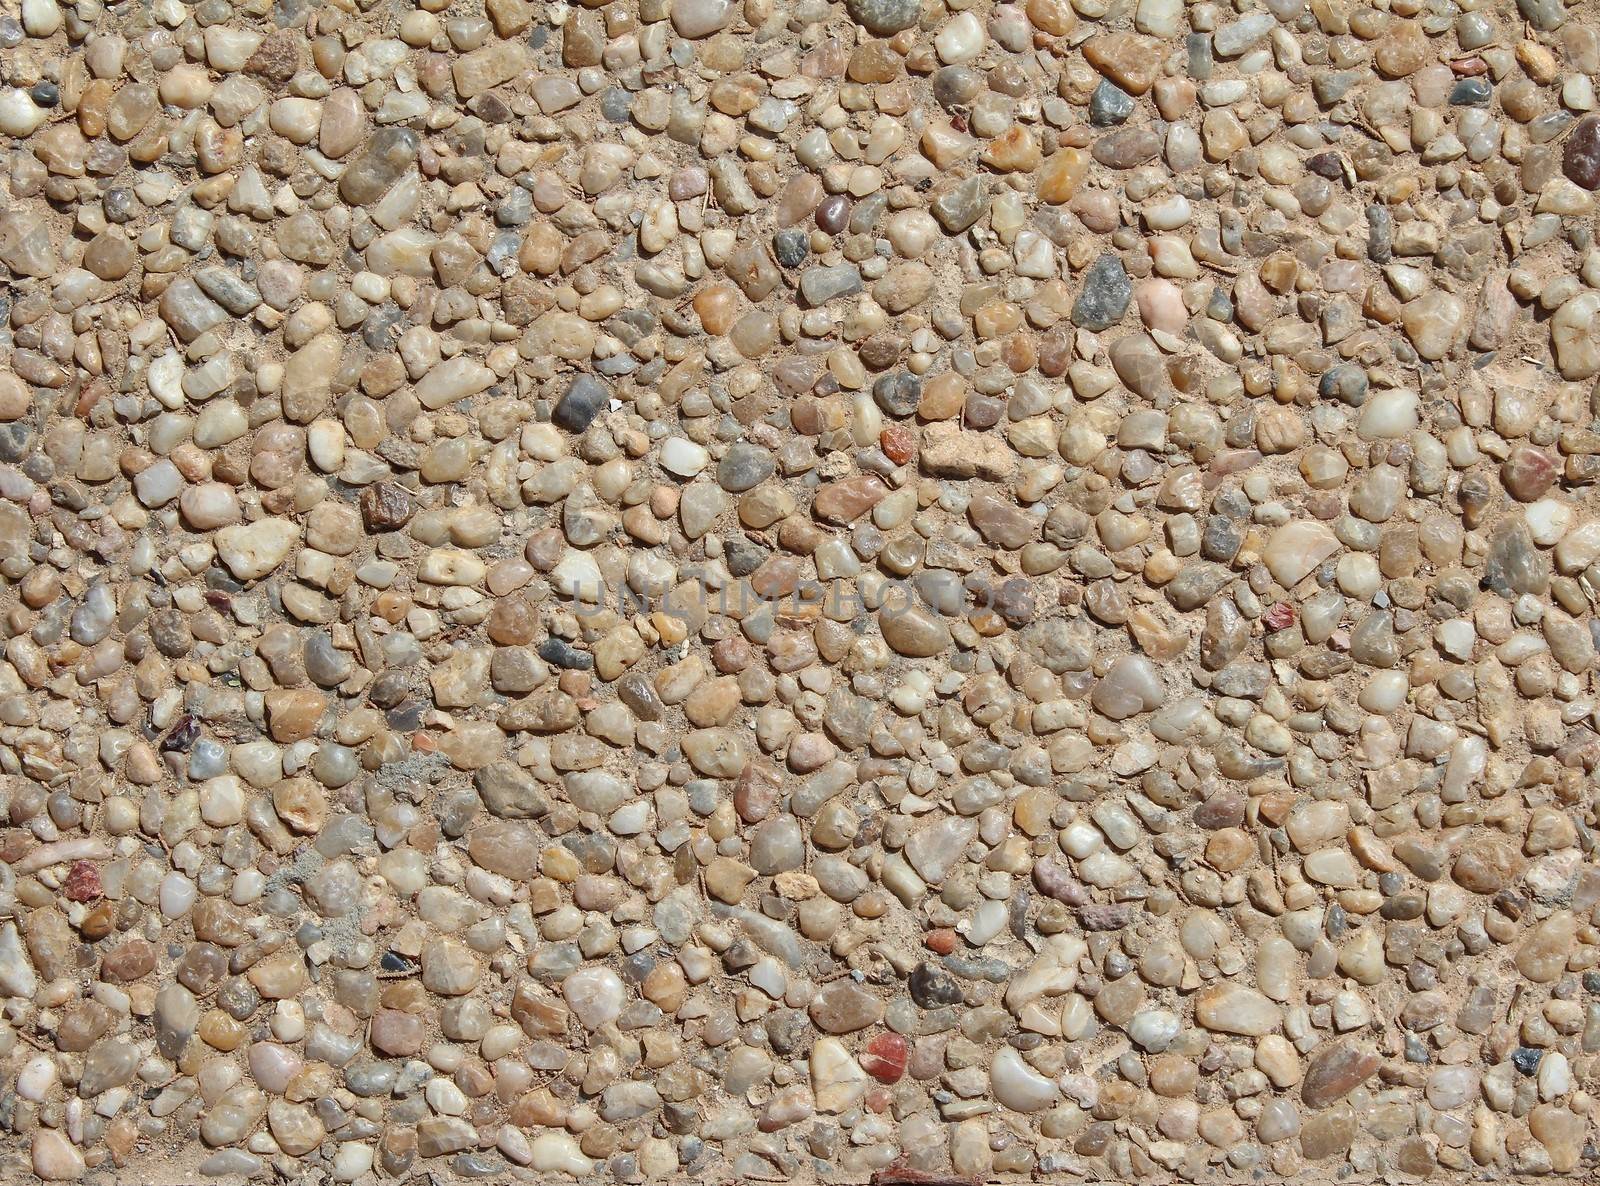 pebble stones background. closeup of stones texture